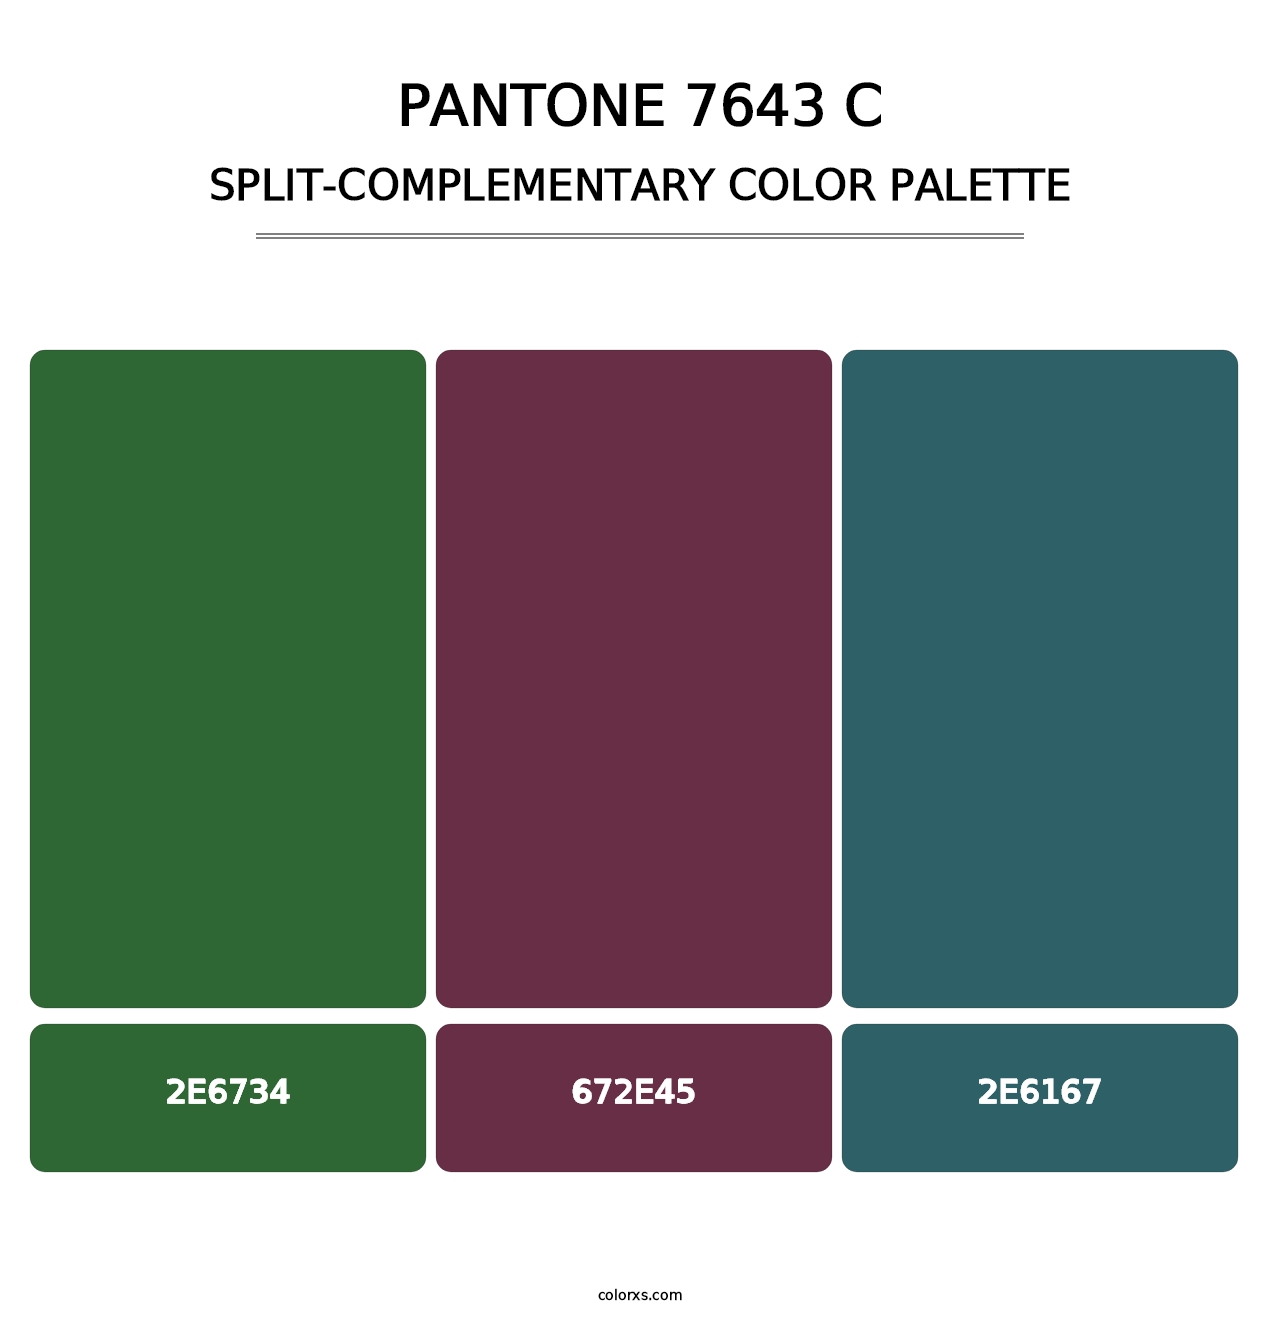 PANTONE 7643 C - Split-Complementary Color Palette